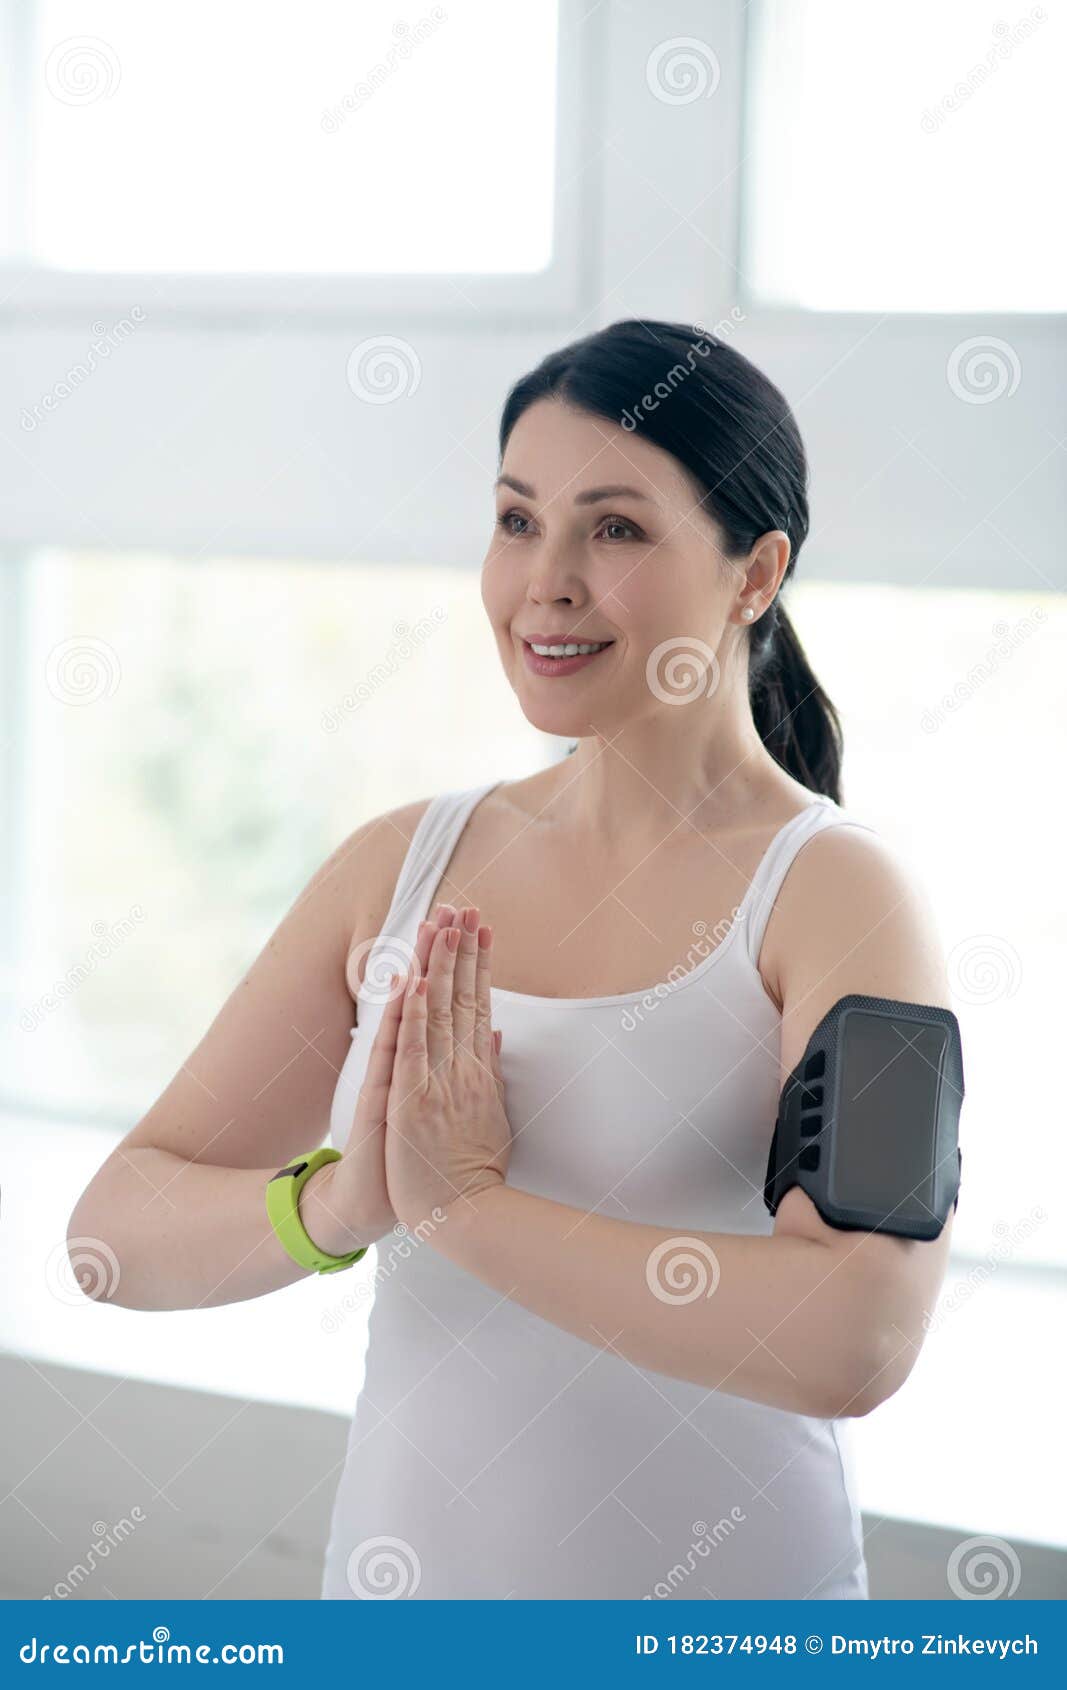 brunette female performing namaste, pressing hands together, wearing pulsometer